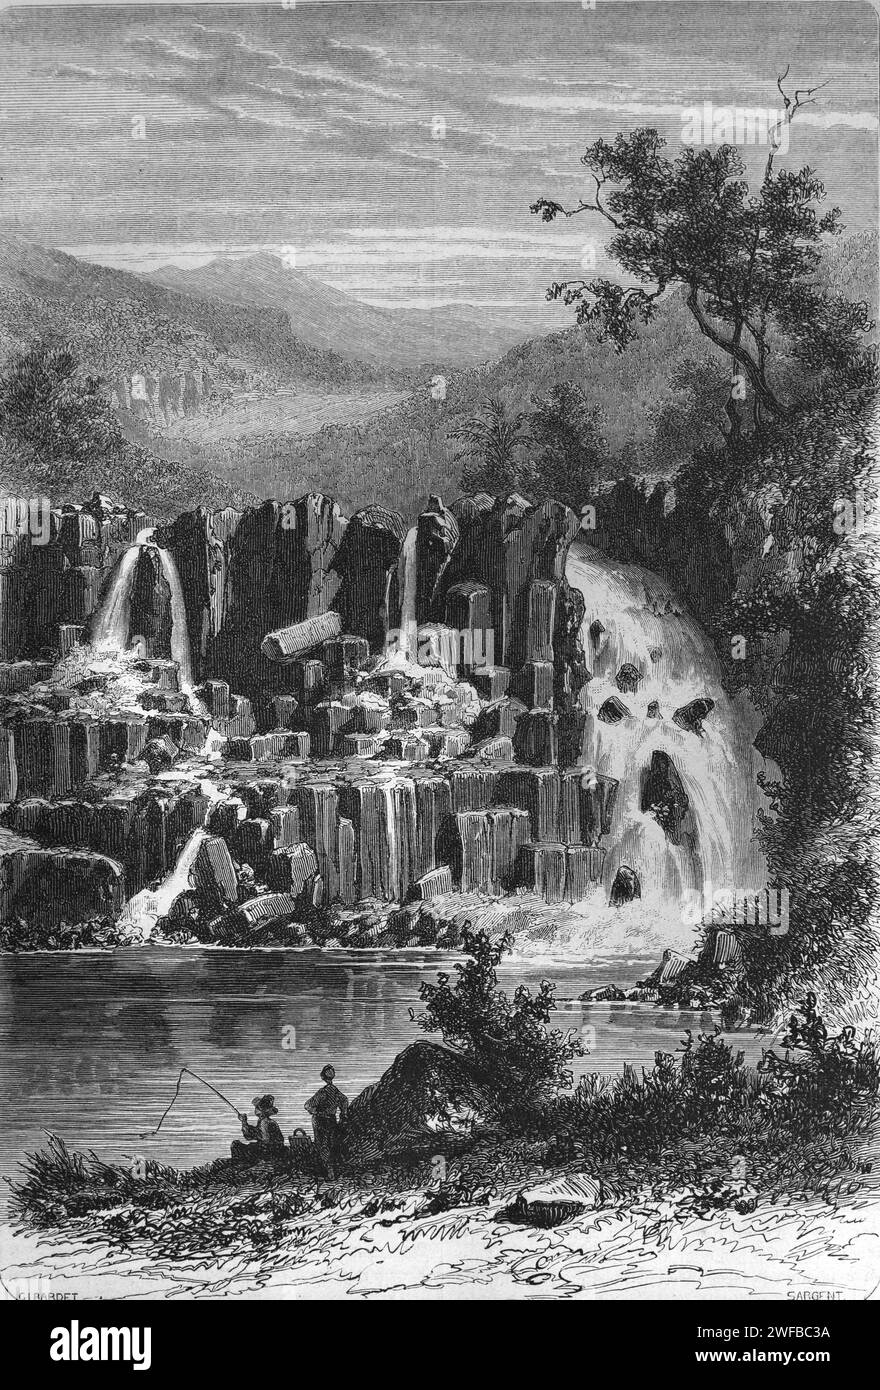 Rochester Falls Wasserfall oder Kaskade am Savanne River in der Nähe von Souillac Mauritius. Vintage oder historische Gravur oder Illustration Stockfoto